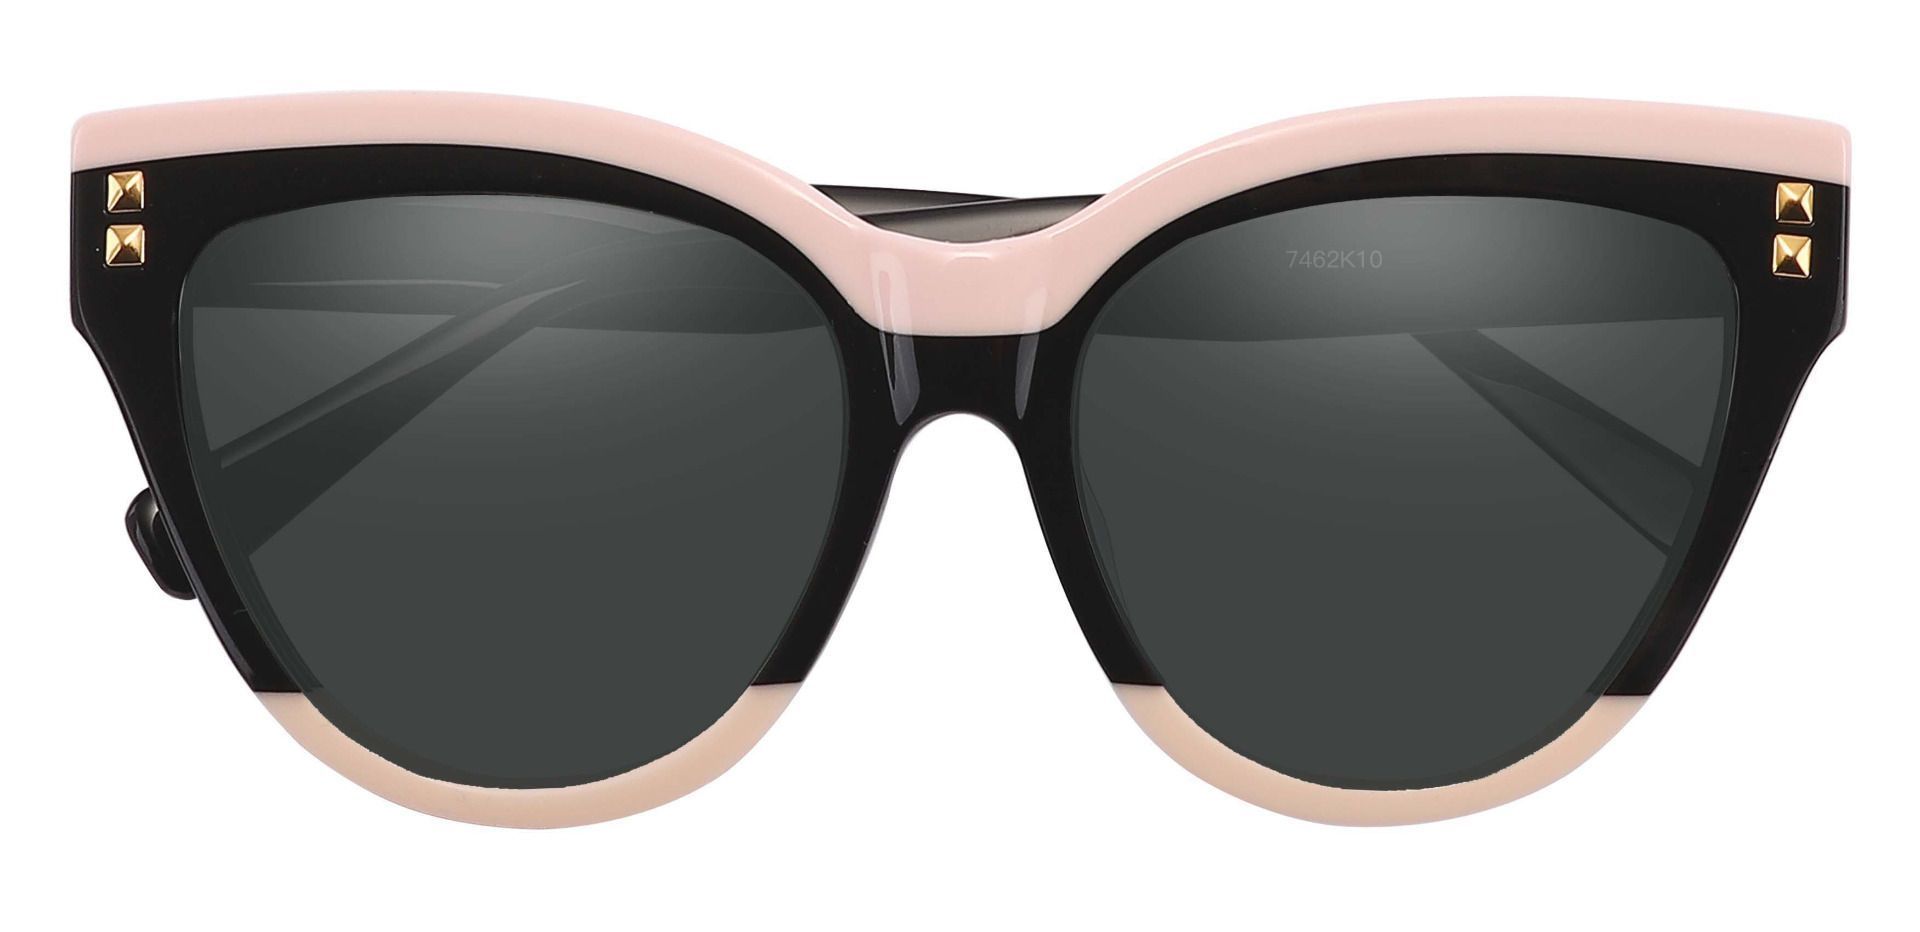 Mulberry Cat Eye Progressive Sunglasses - Black Frame With Gray Lenses